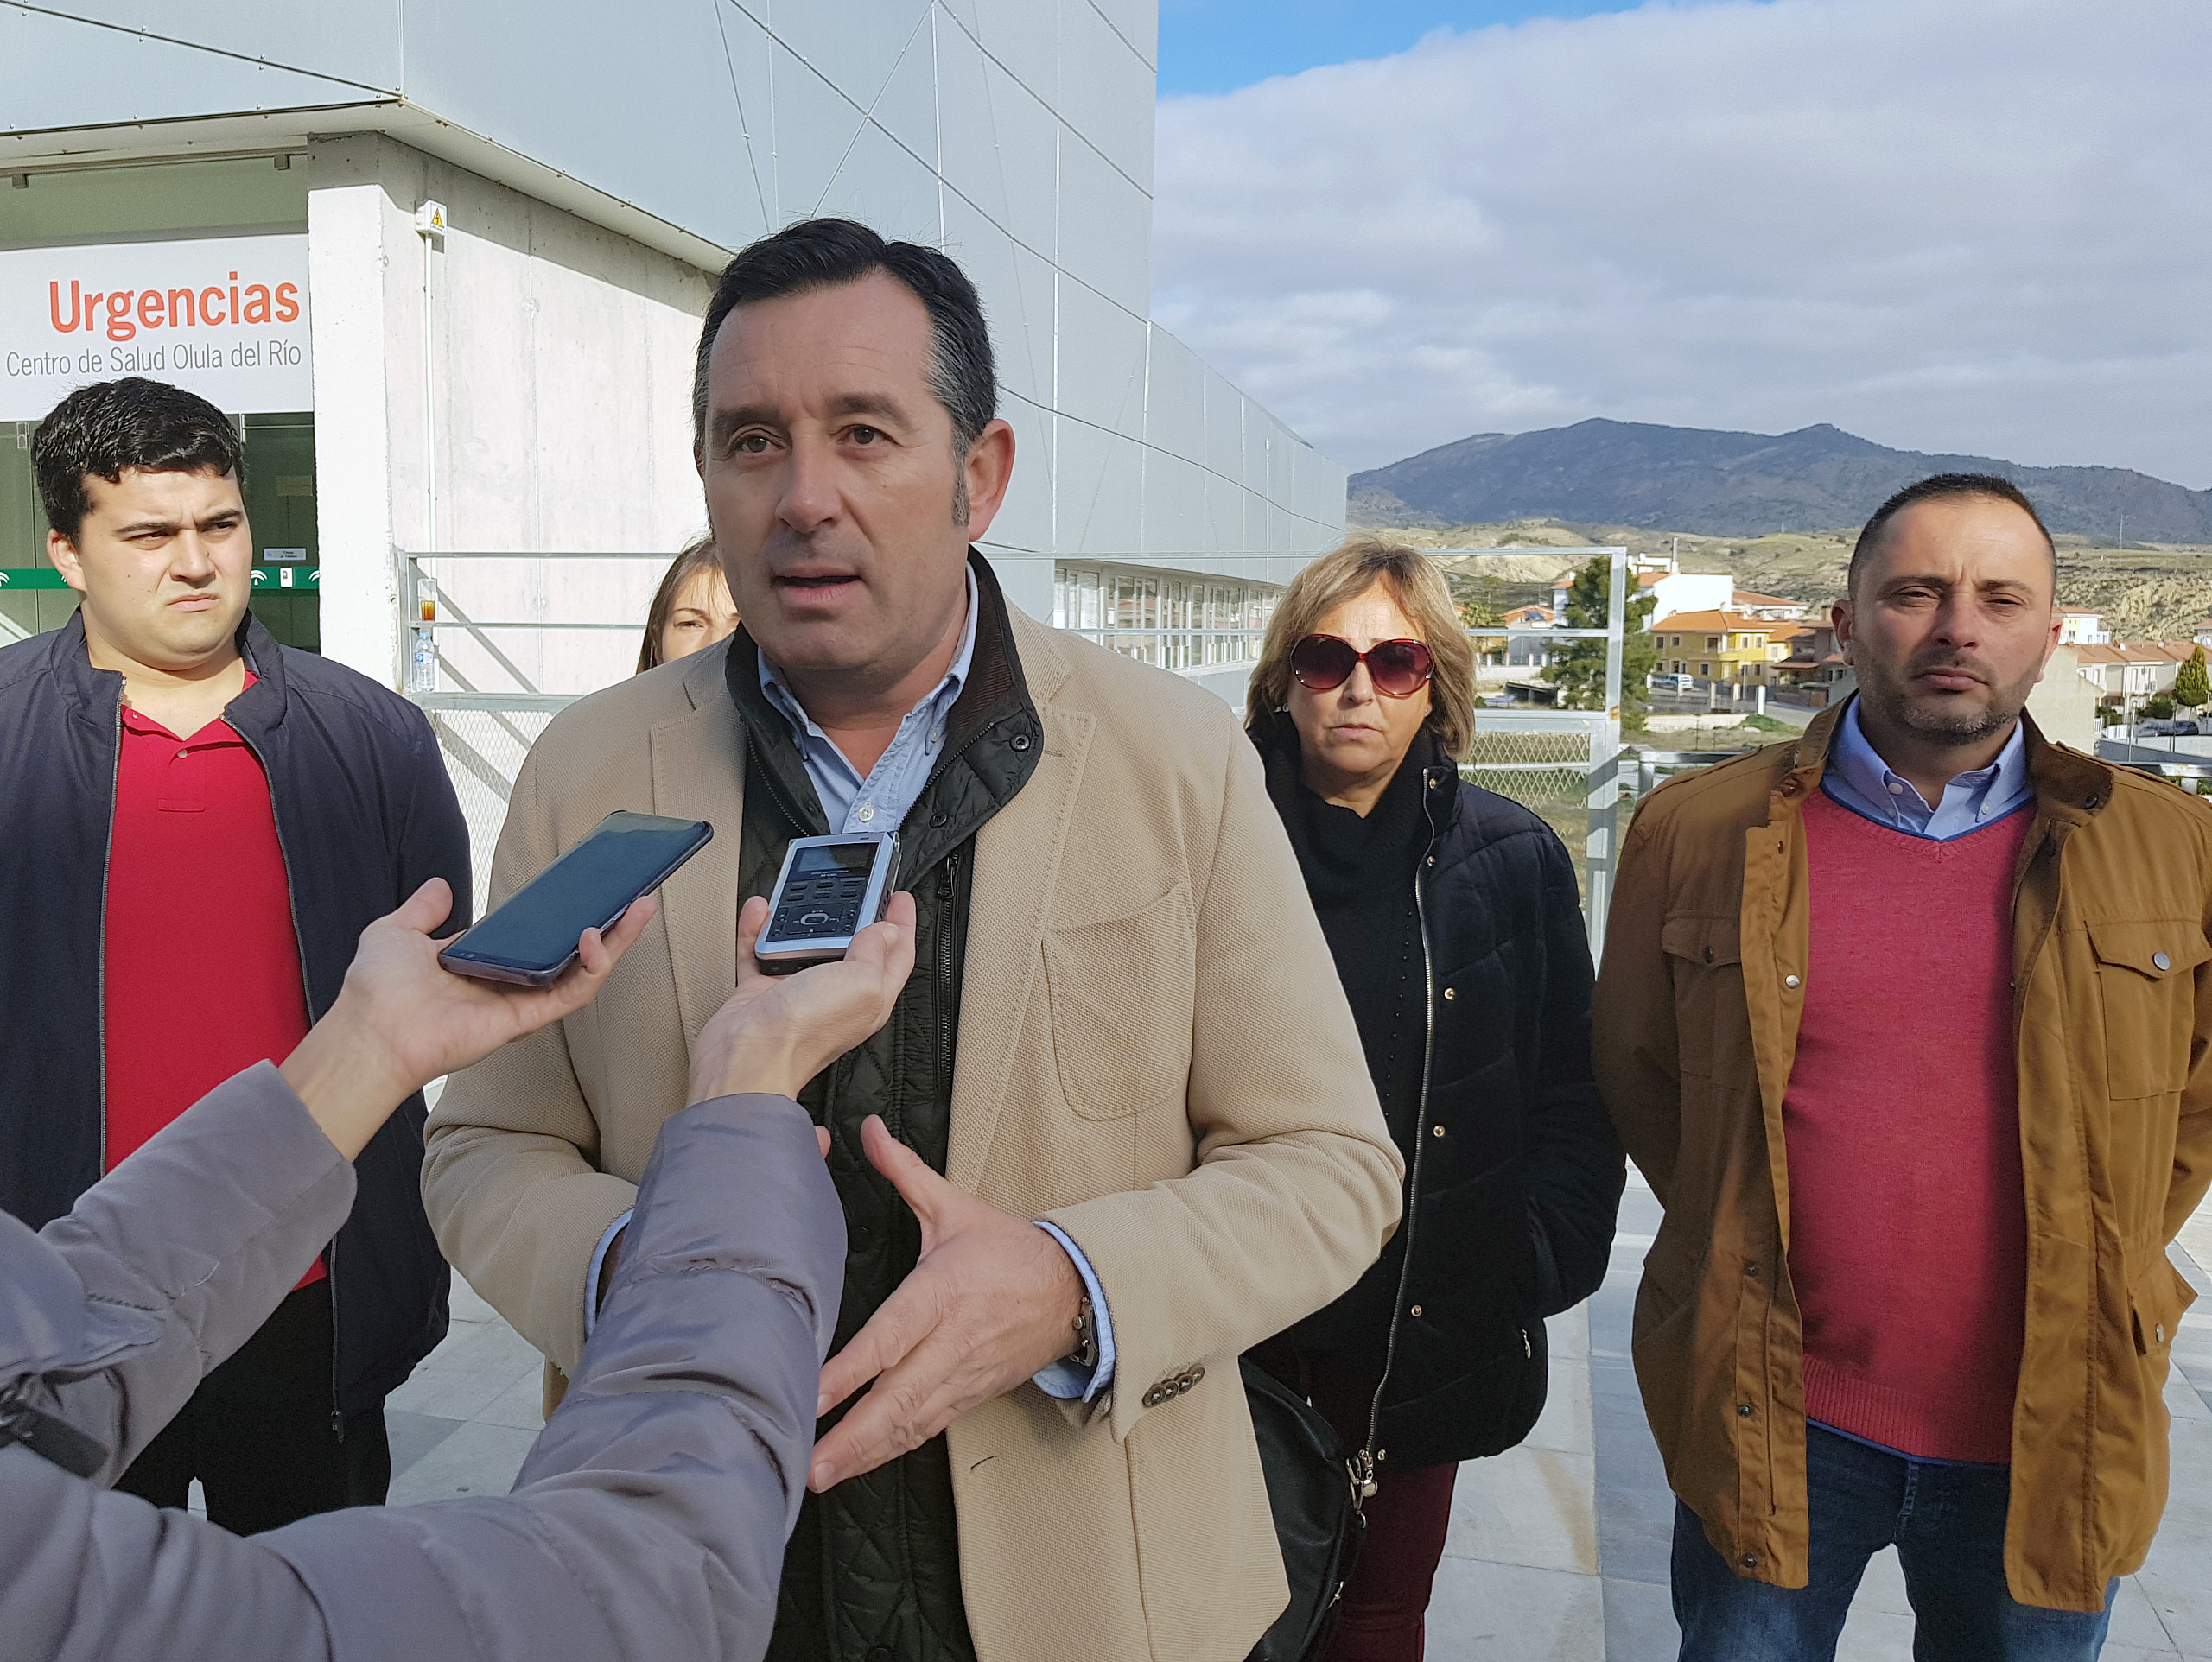 PSOE Olula del Río, Diego Castaño y ediles junto al centro de salud del municipio